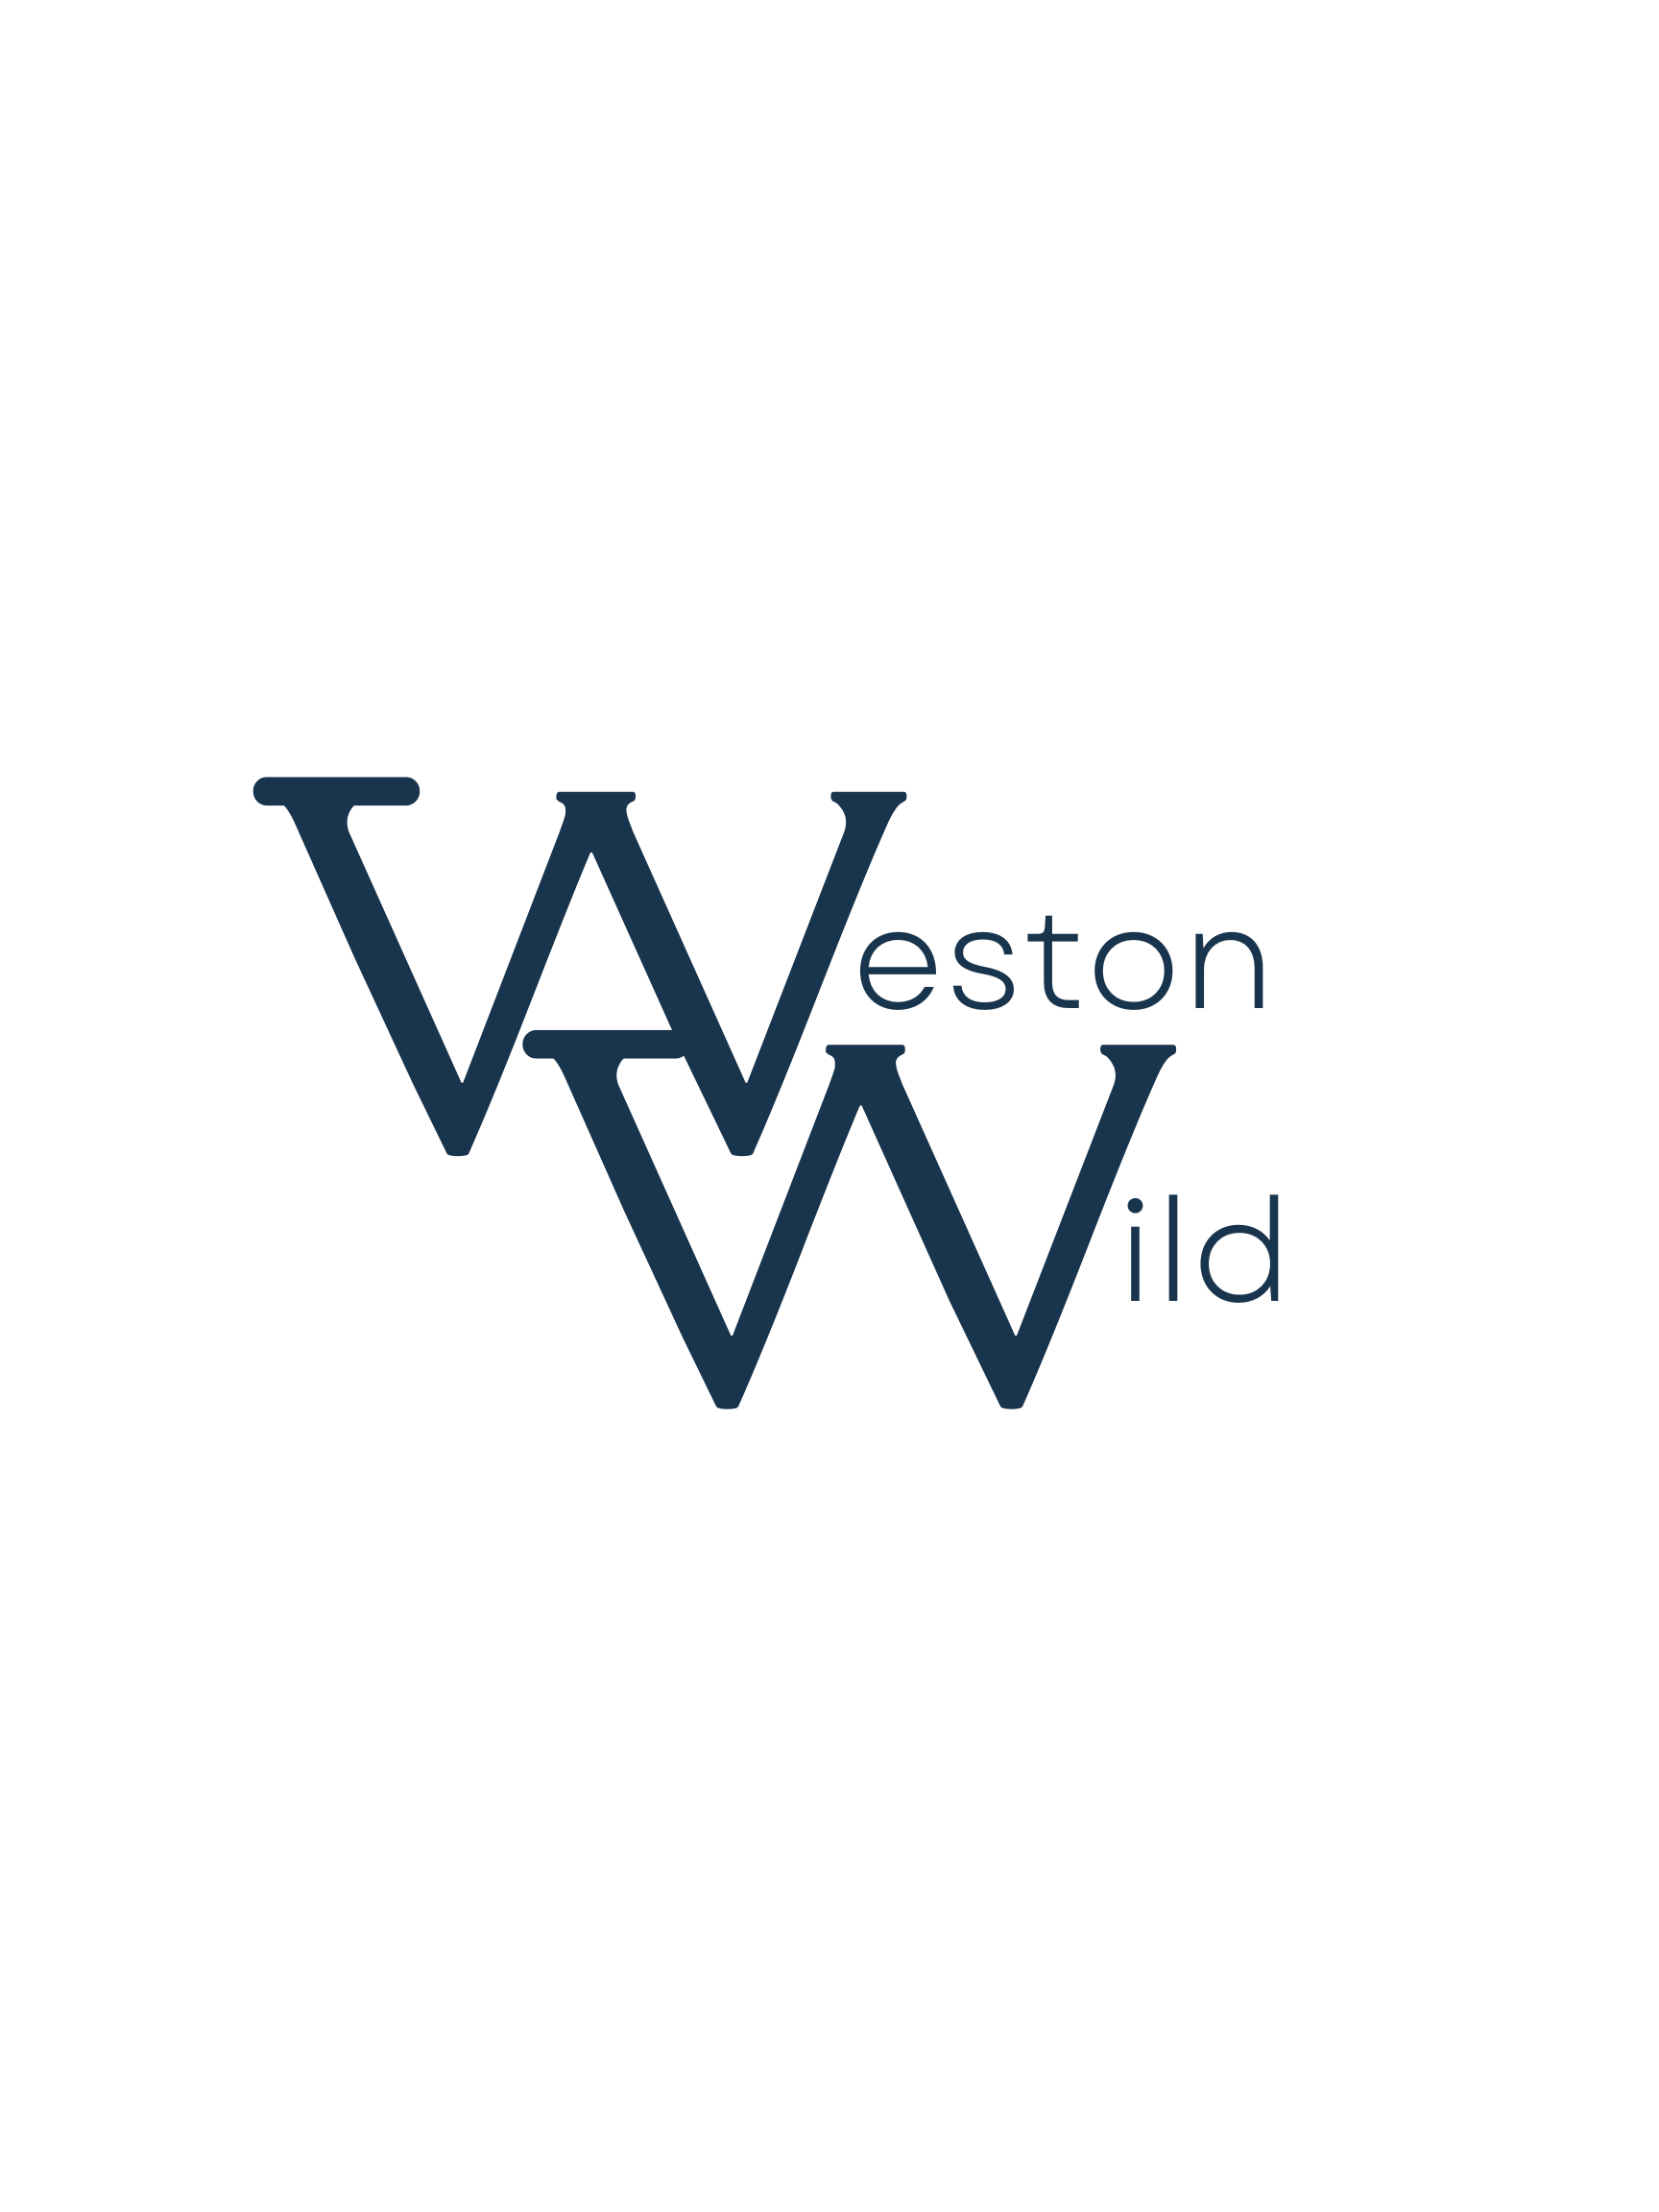 Weston Wild